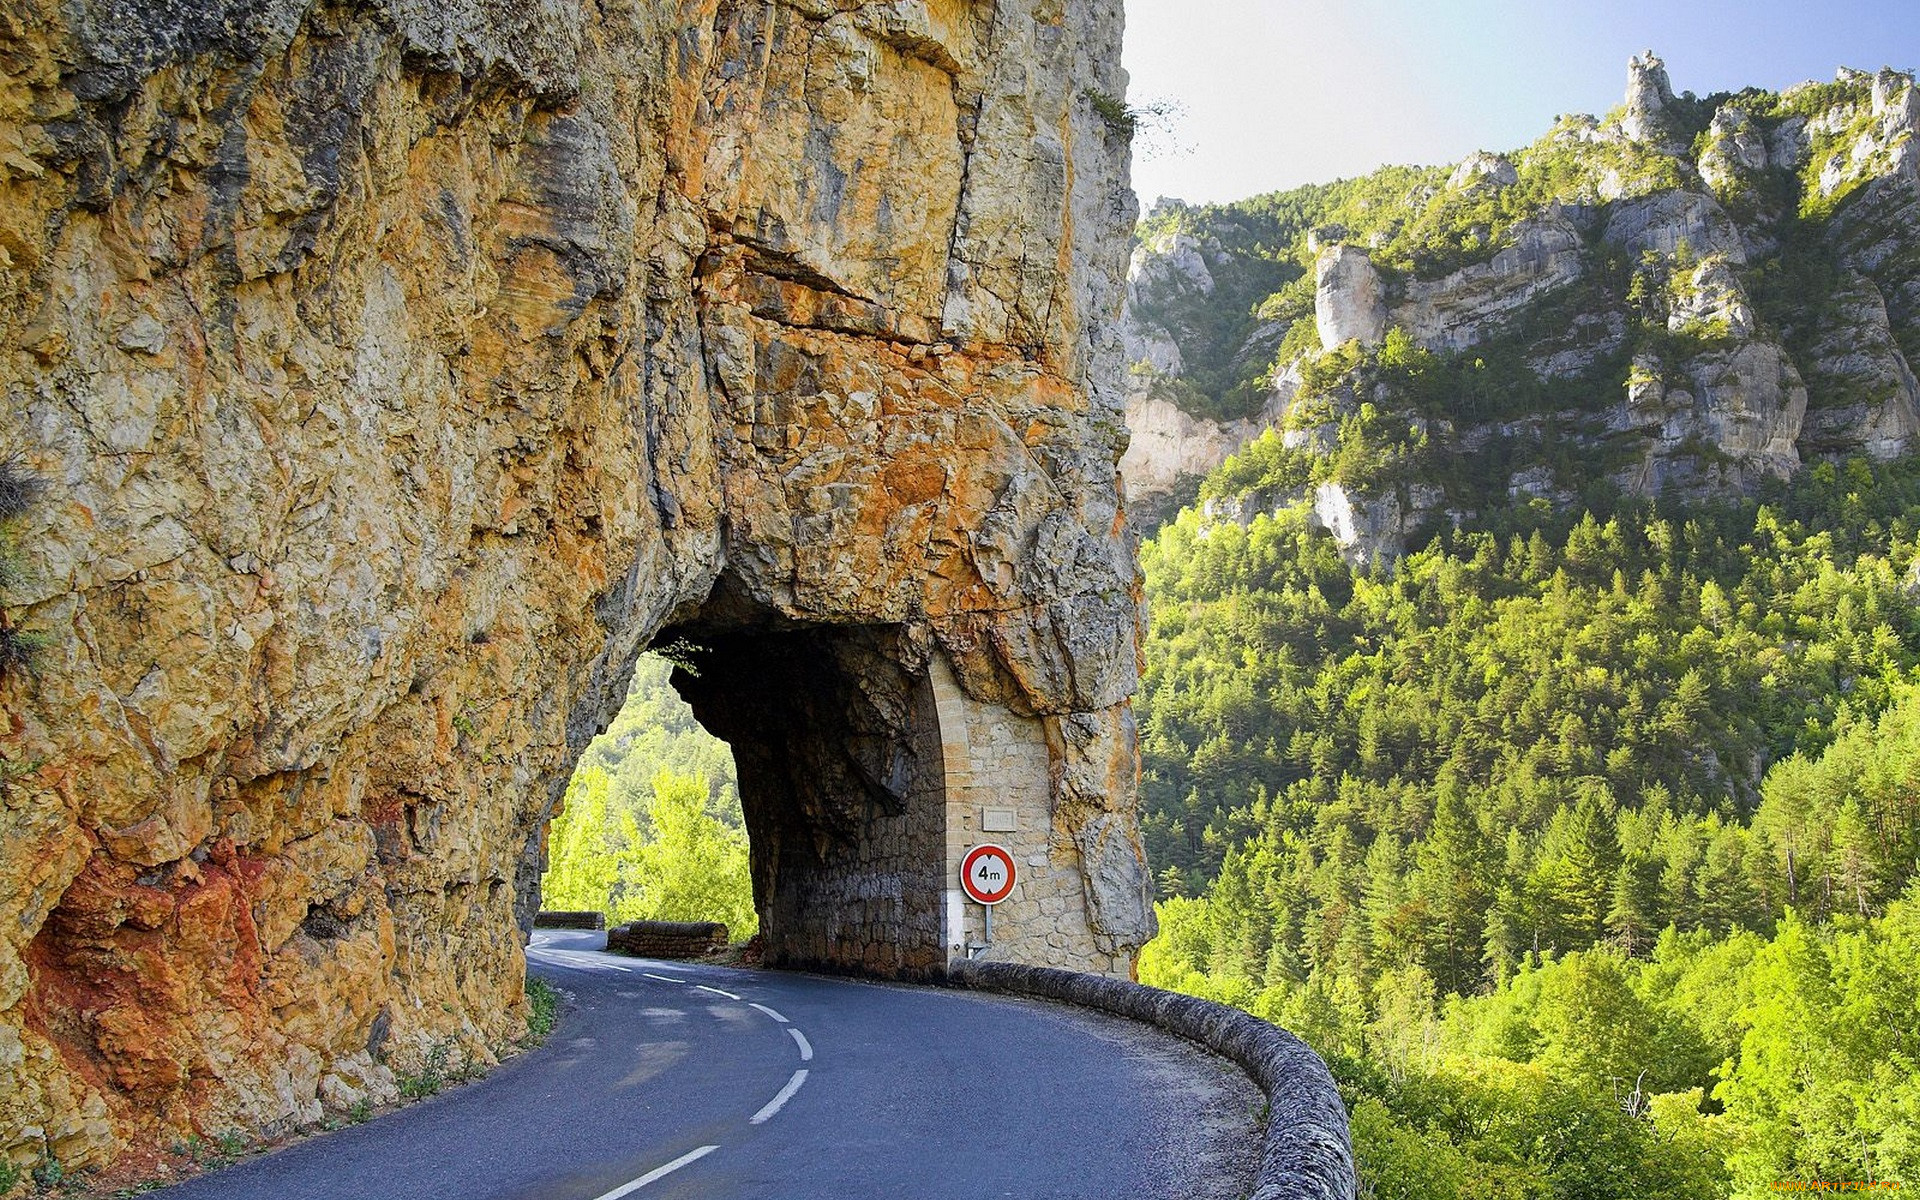 За тем поворотом дороги оказалась деревня. Горный тоннель Гуолян. Скала-туннель (tunnel Rock). Дорога в гору. Туннель в скале.